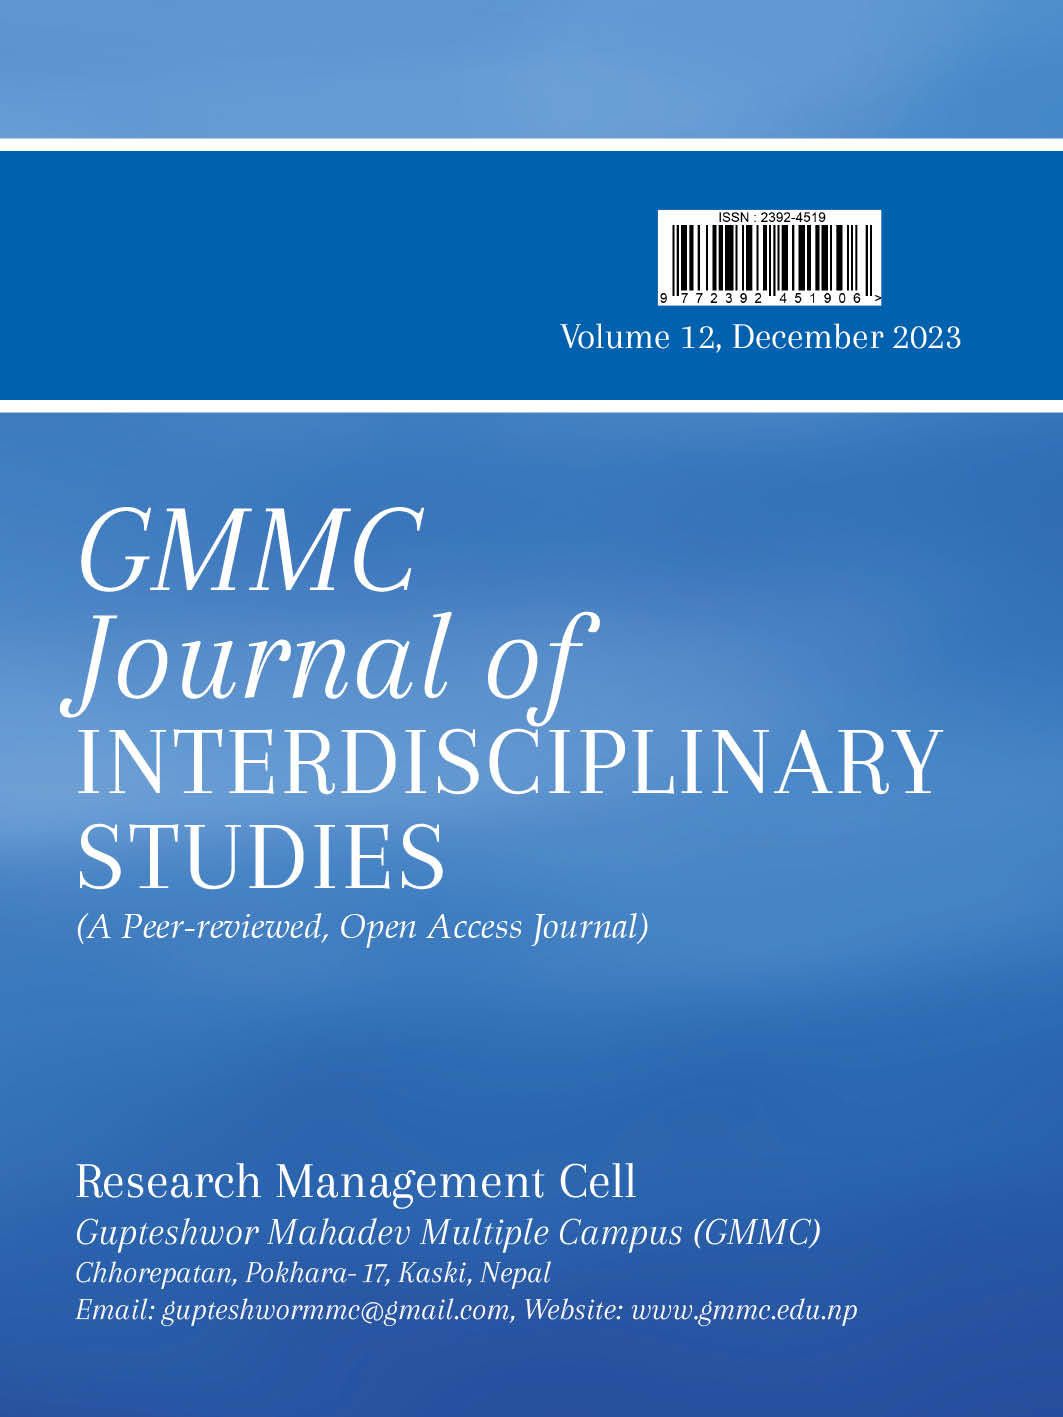 GMMC Journal